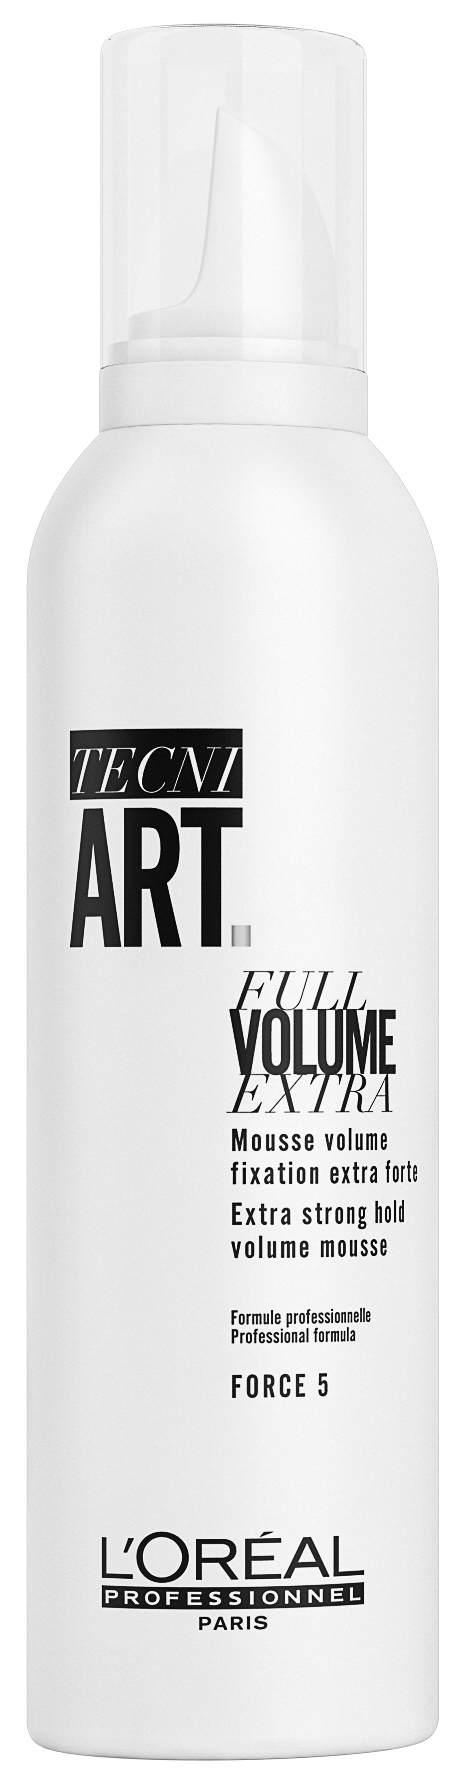 Full Extra volume